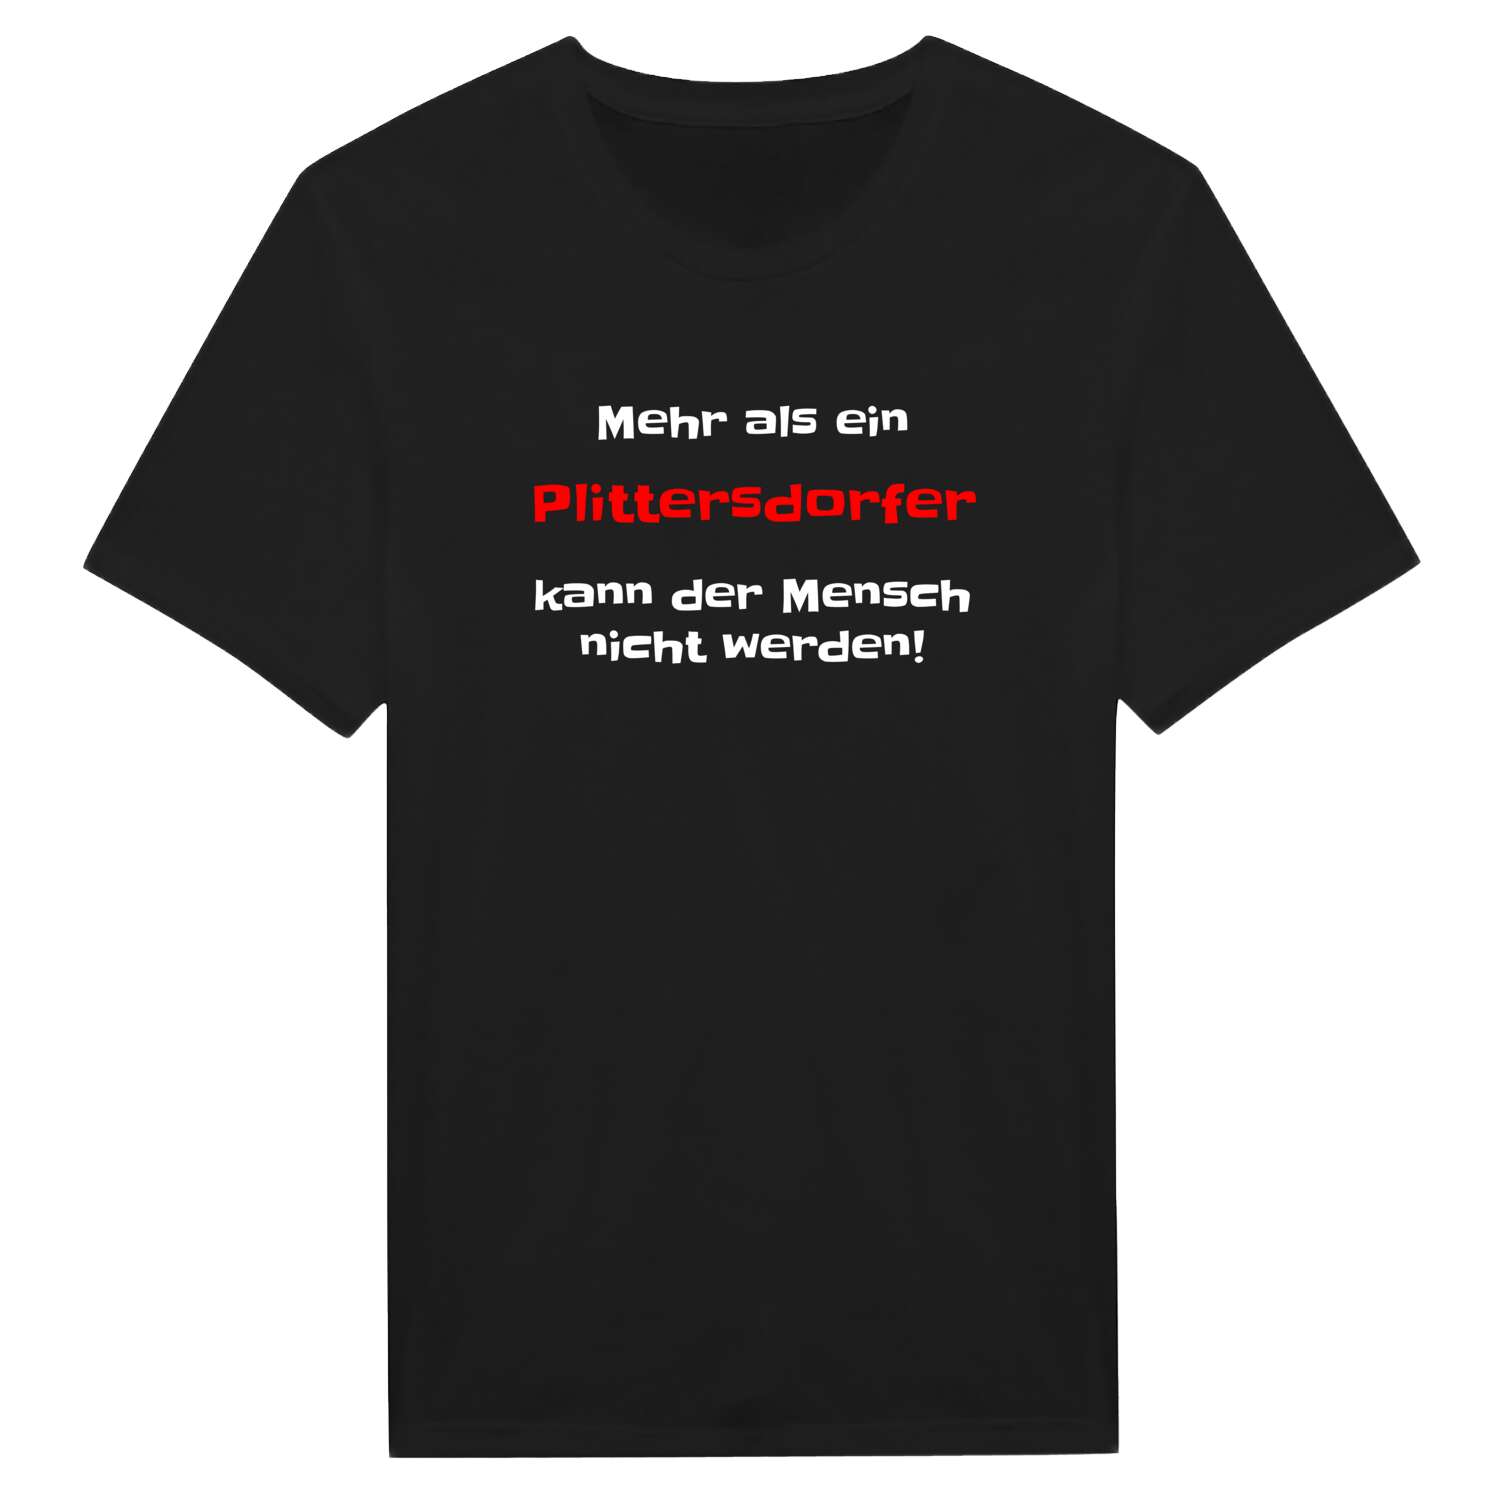 Plittersdorf T-Shirt »Mehr als ein«